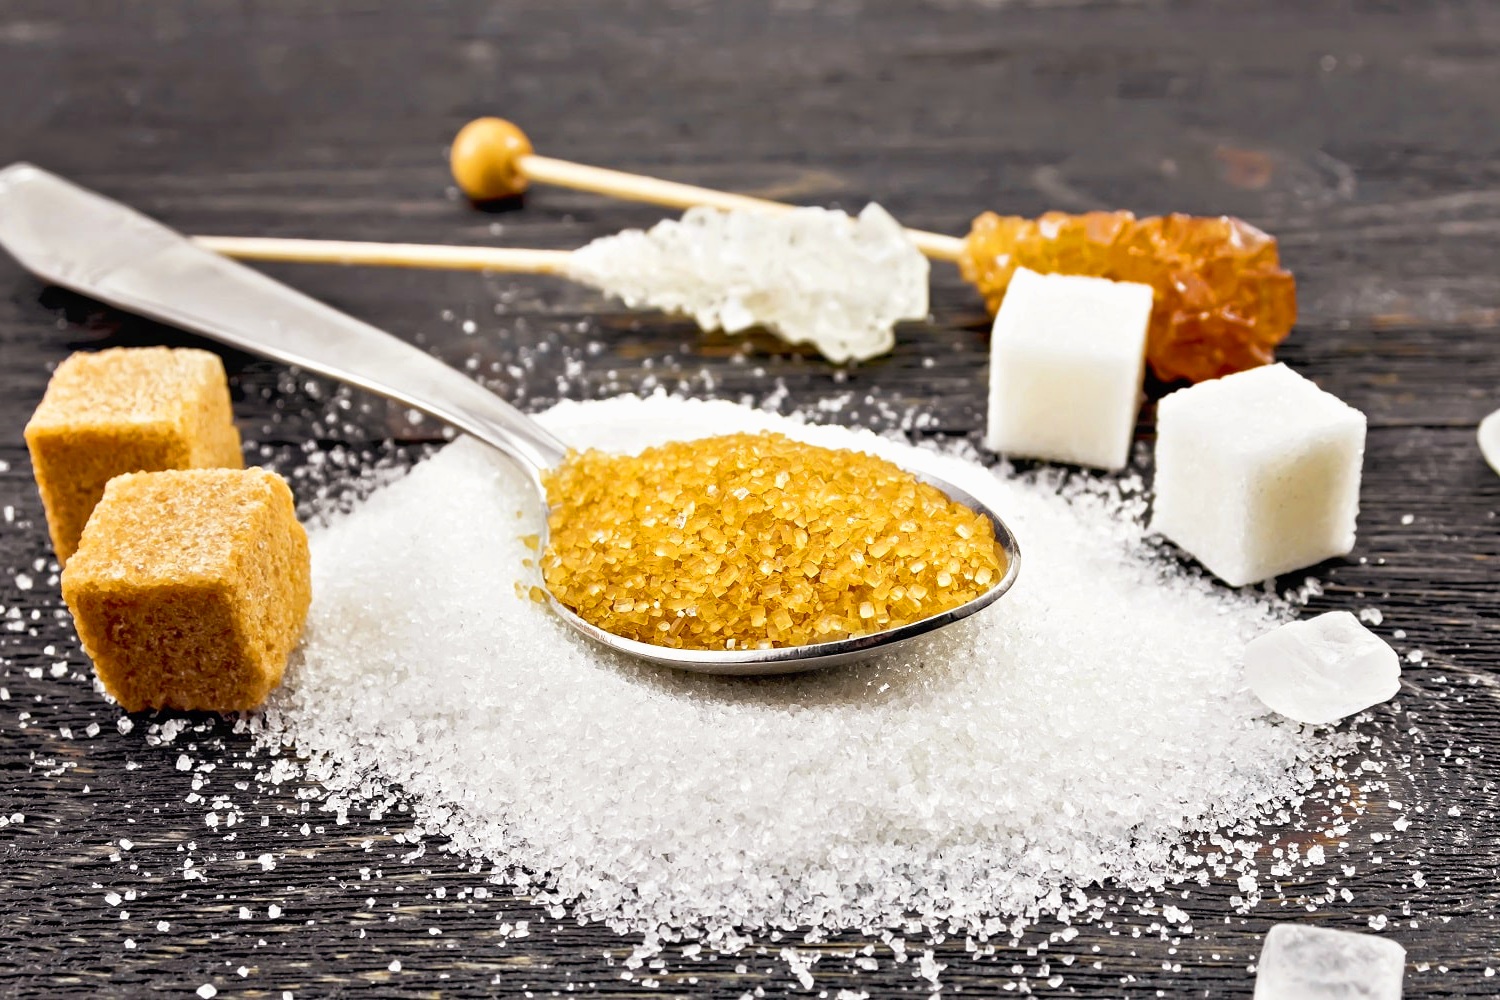  
Захарта причинява кариес наддаване на тегло и диабет – това